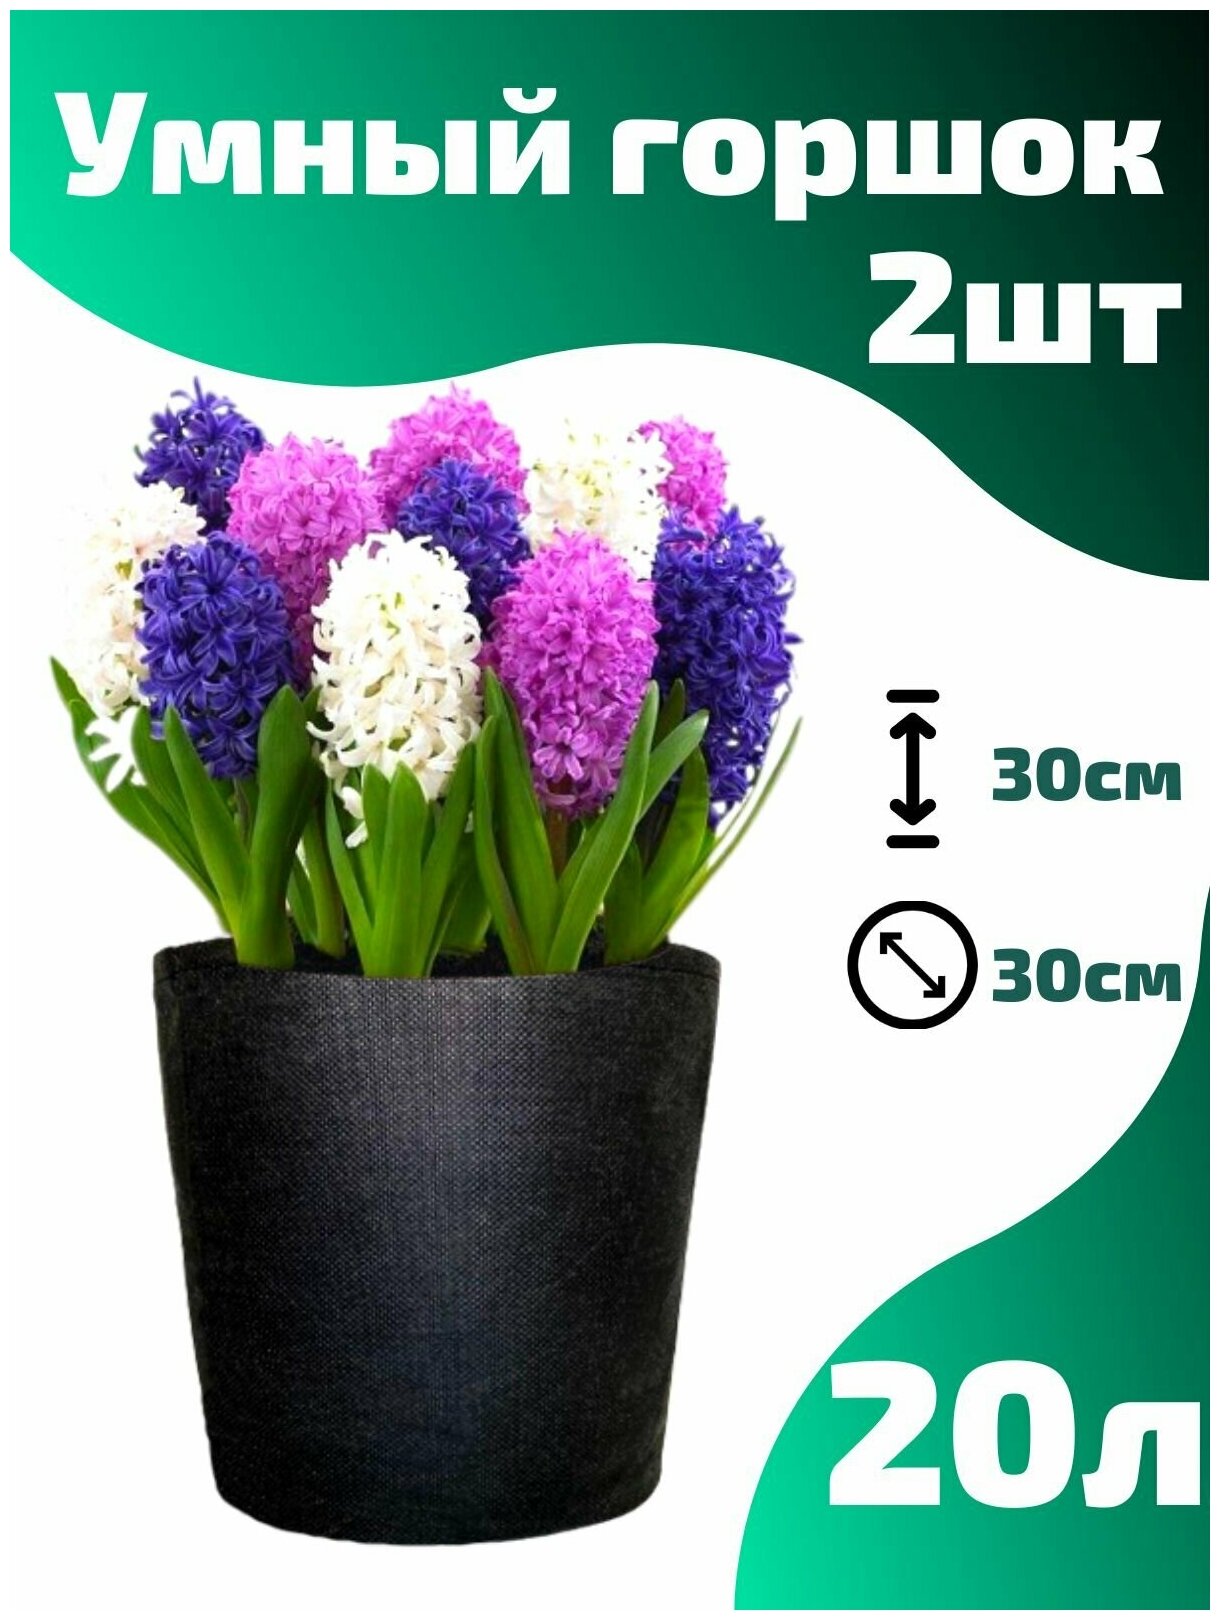 Горшок текстильный для рассады, растений, цветов Smart Pot - 20 л 2 шт.